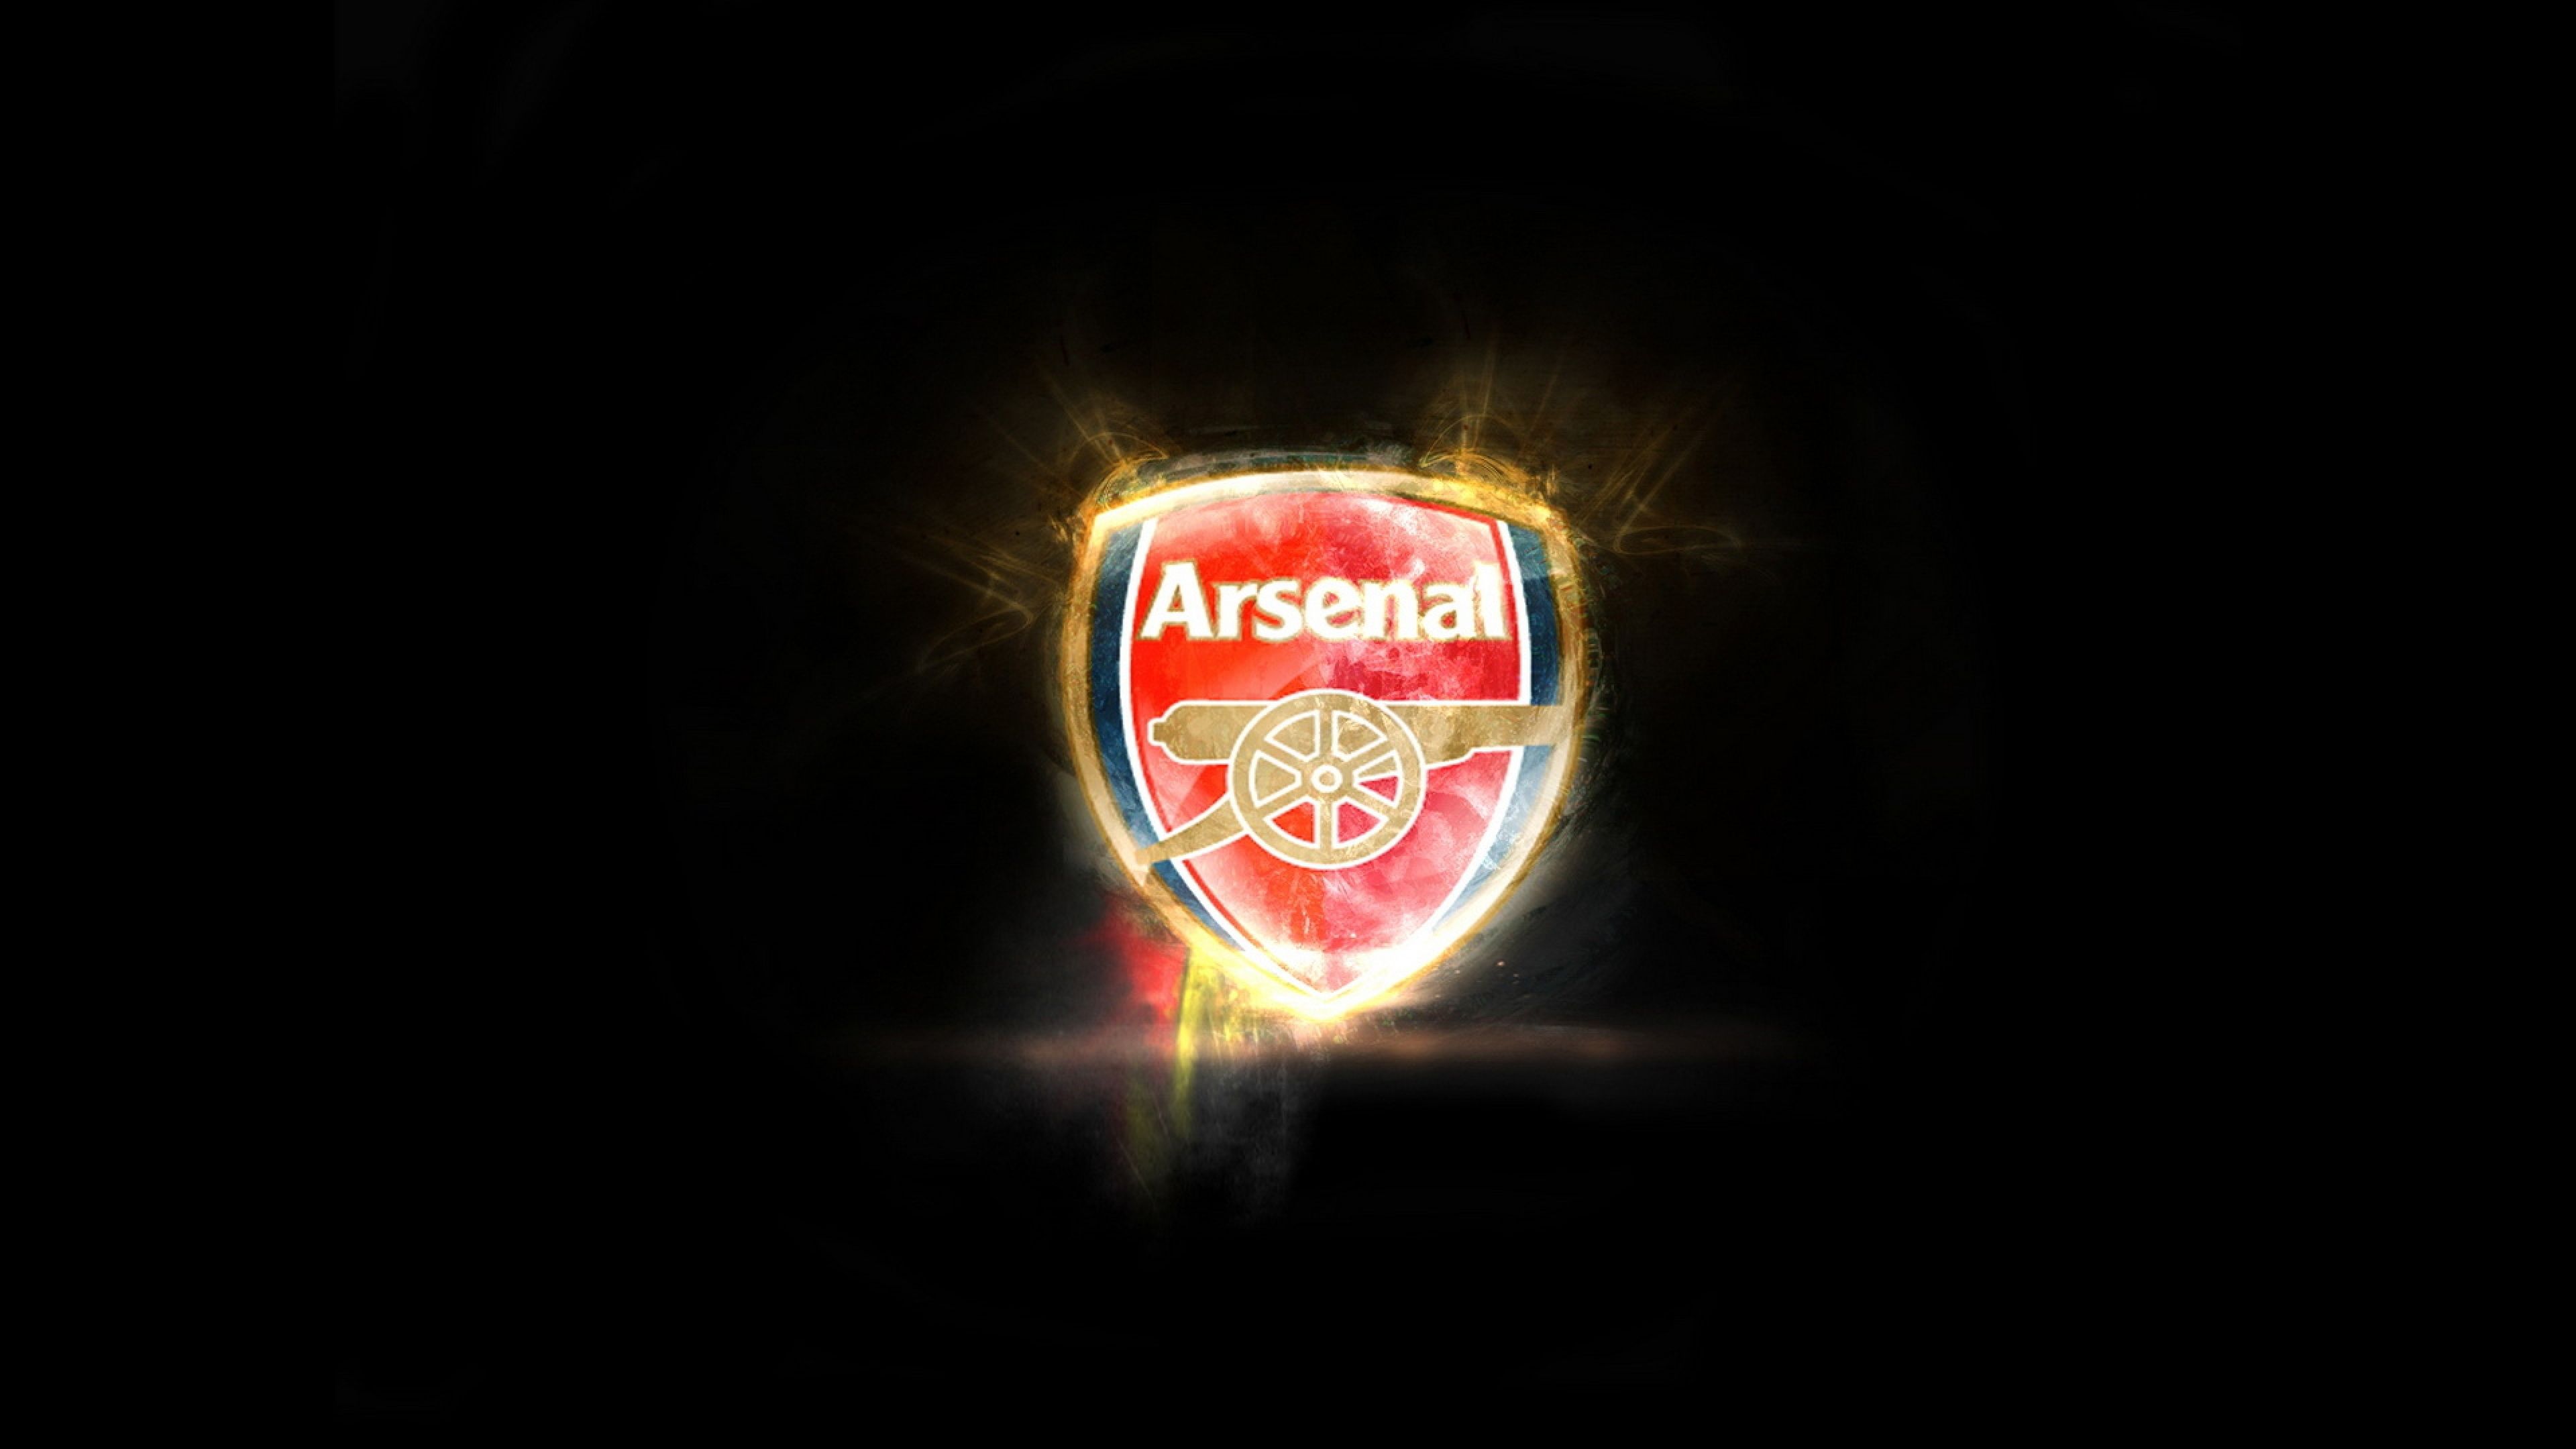 Arsenal 4K Wallpaper Free Arsenal 4K Background